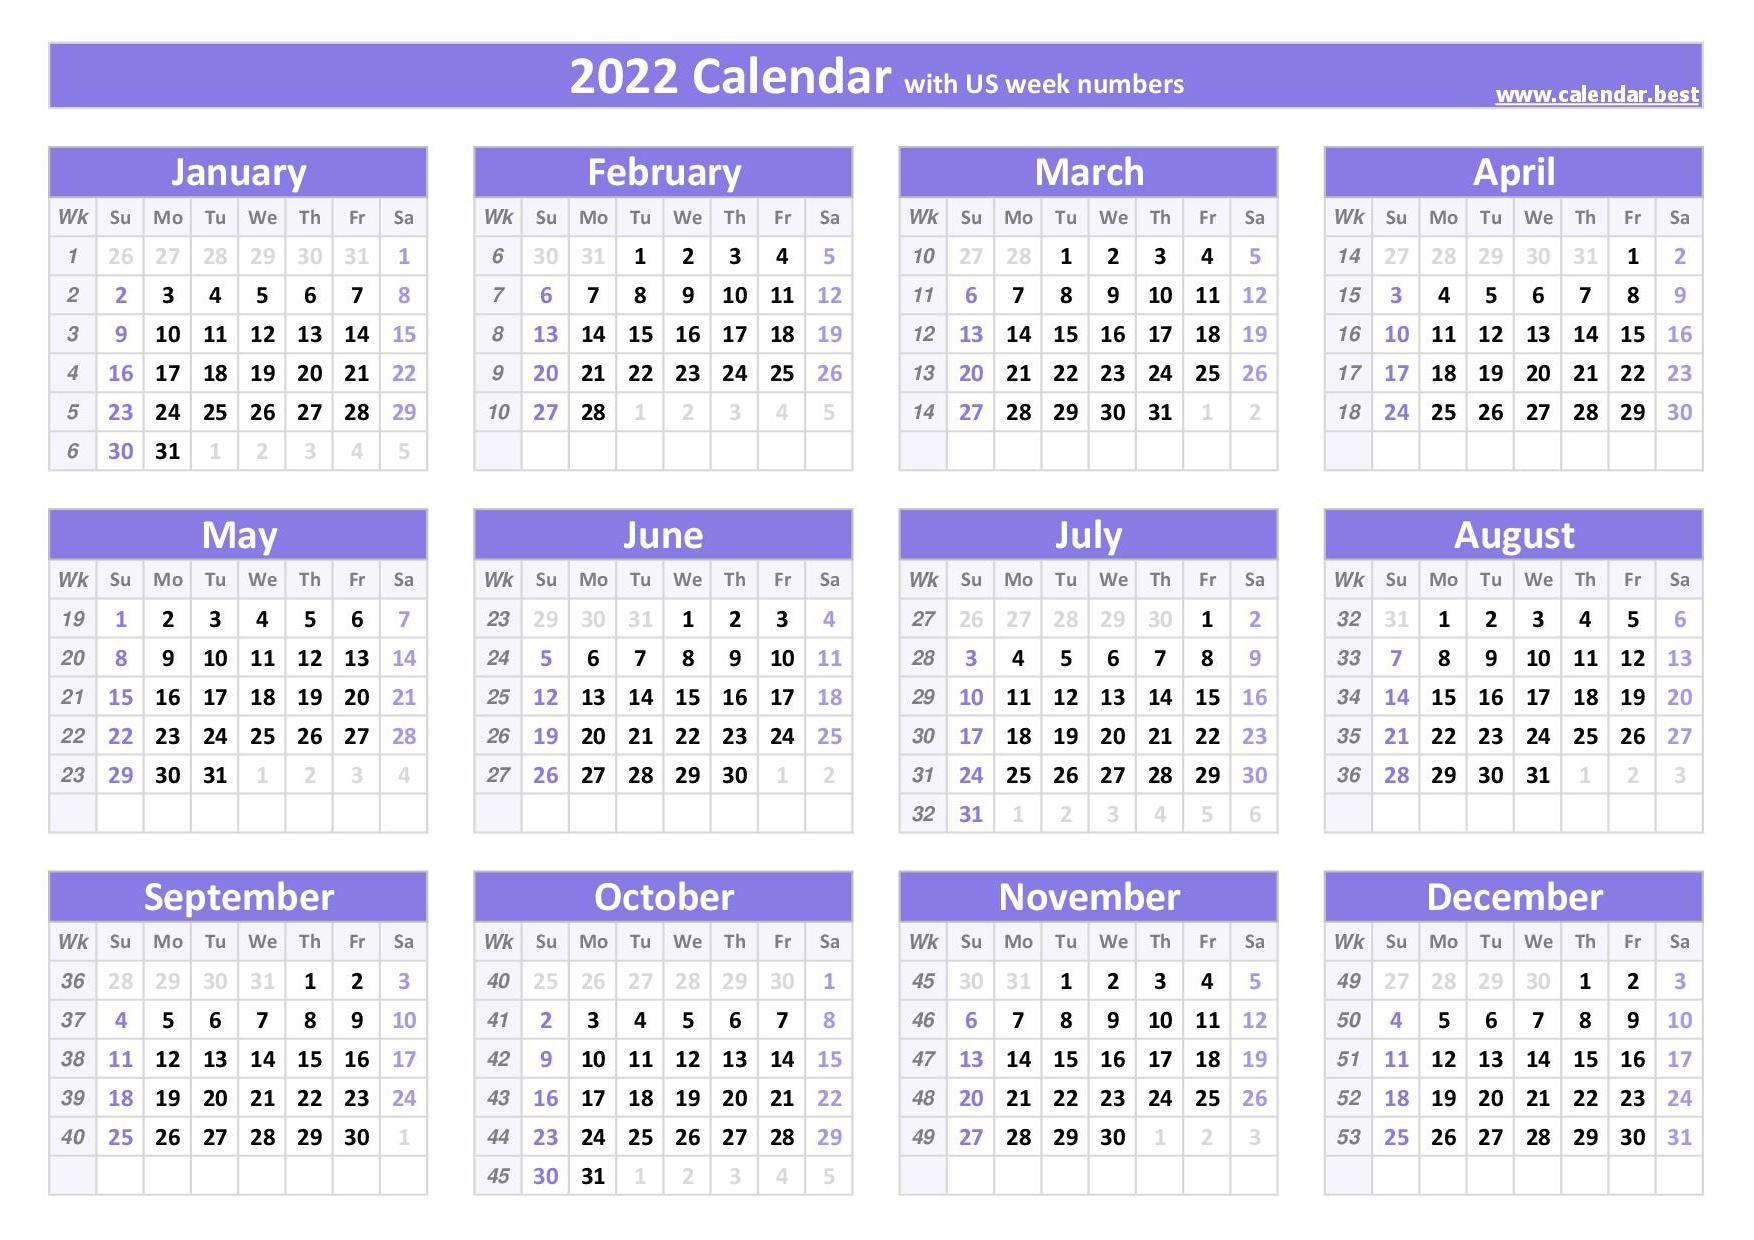 2021-calendar-with-week-numbers-calendar-best-free-printable-2022